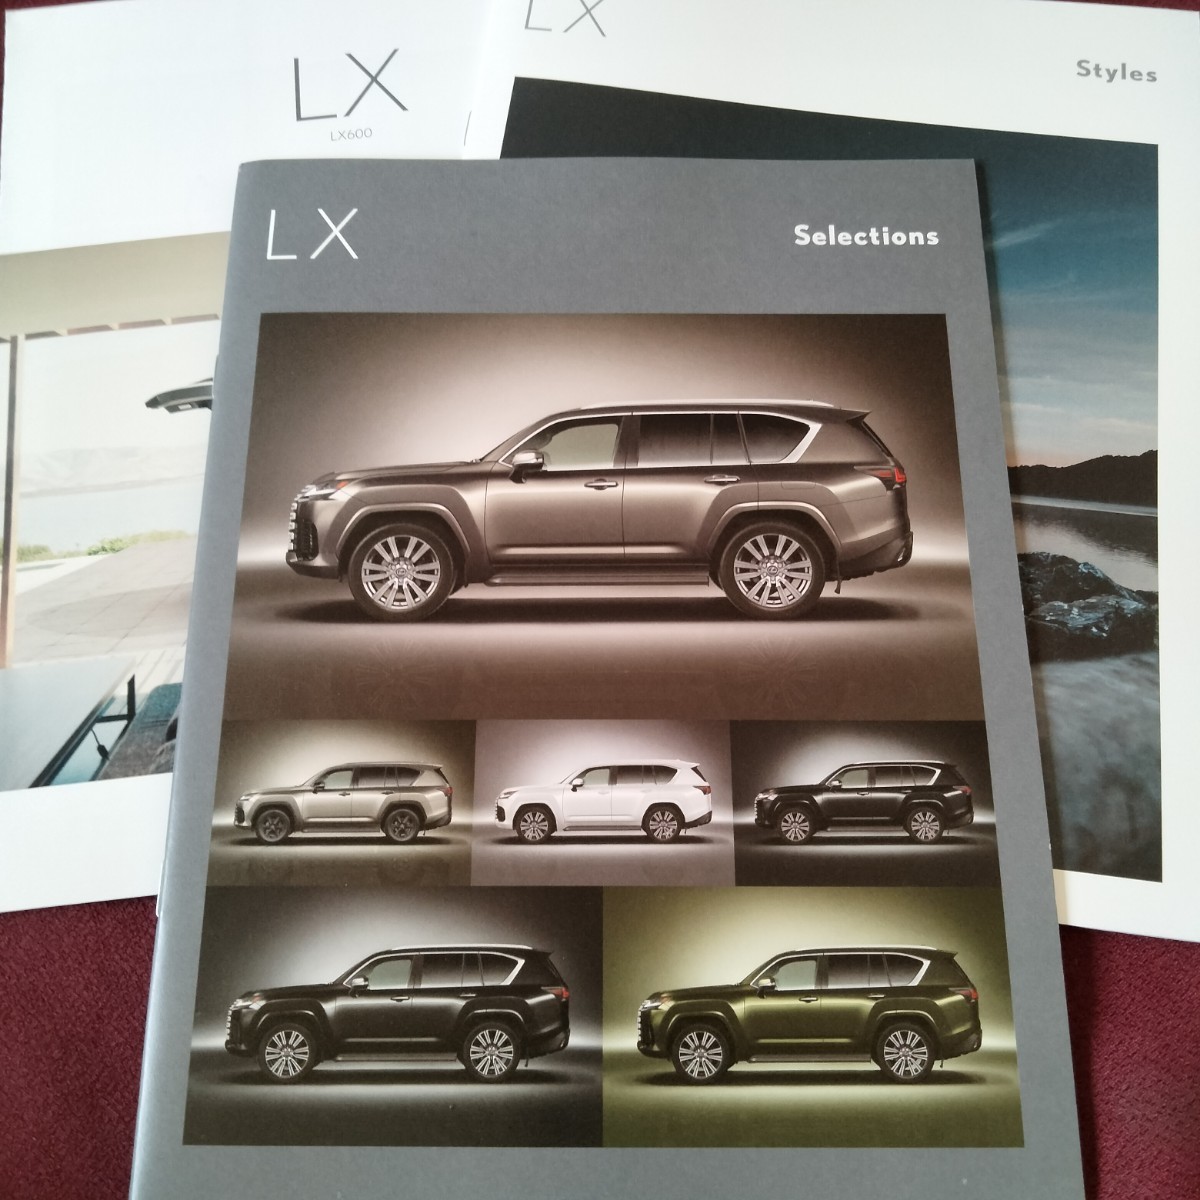 最新版 レクサス LX カタログ Selections 19ページ Styles 27ページ Lexus Dealer Option 5 ページ Lexus LX600の画像1